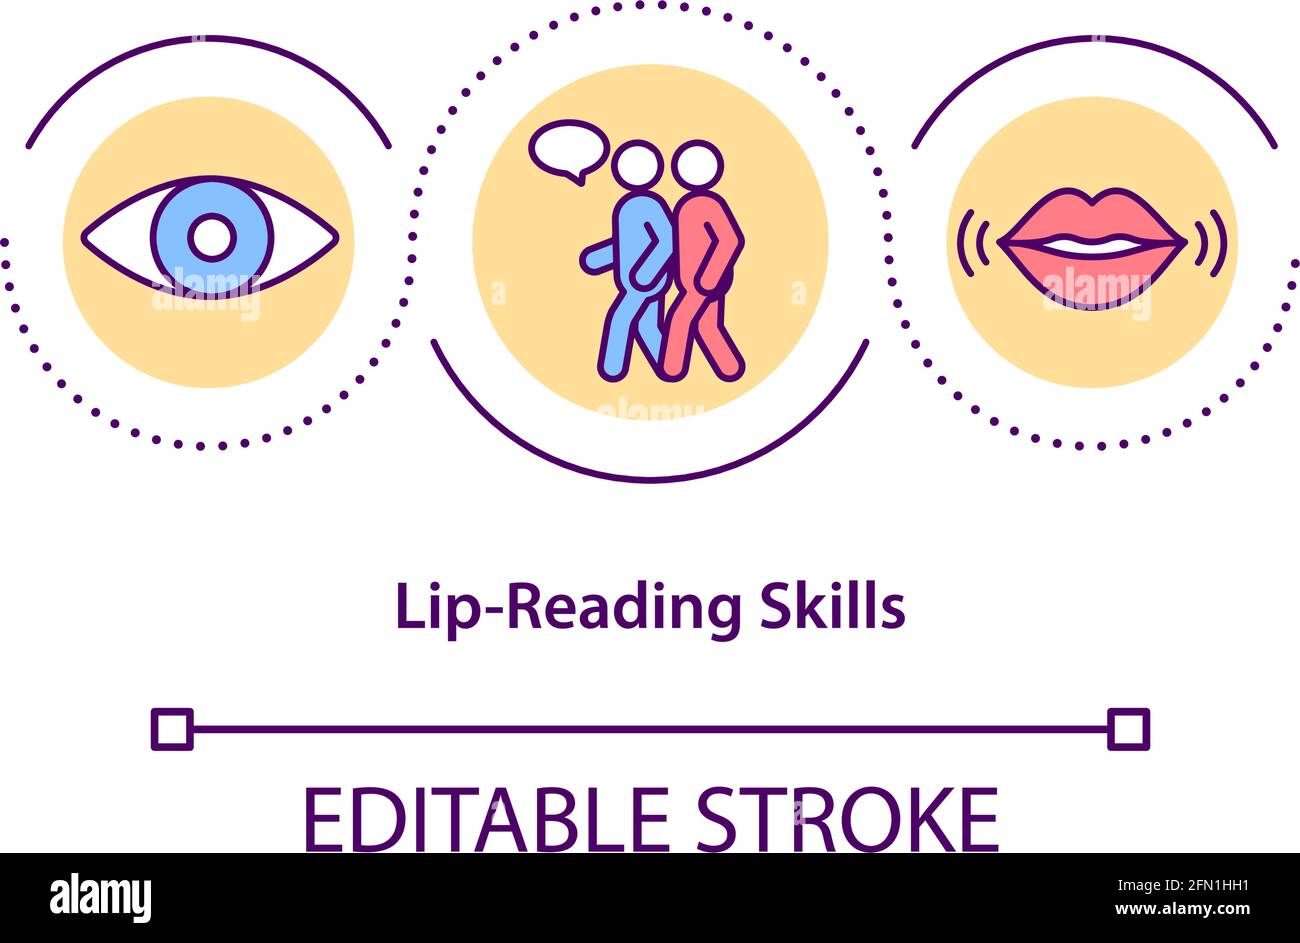 Lip-reading skills concept icon Stock Vector